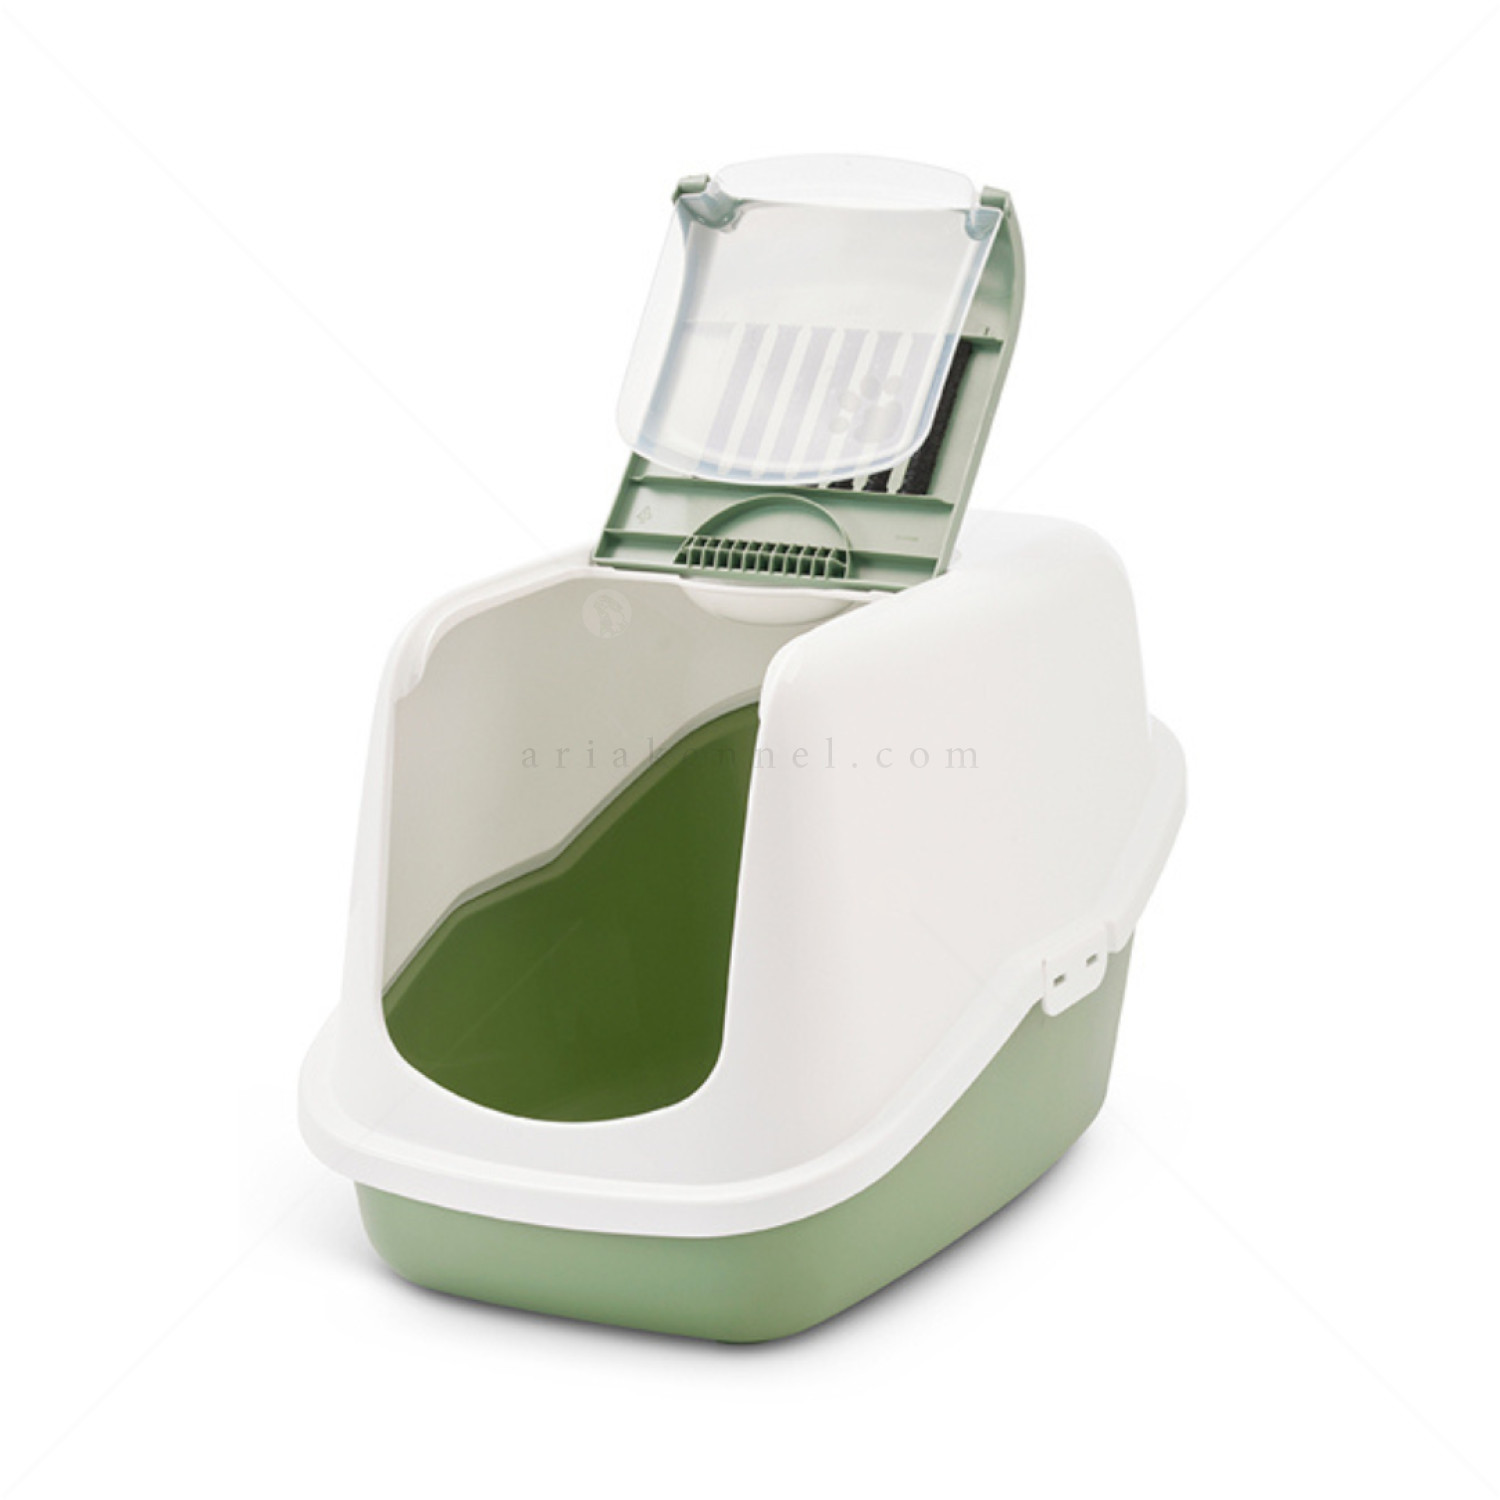 SAVIC Nestor Котешка тоалетна с филтър, бяло/пастелно зелено